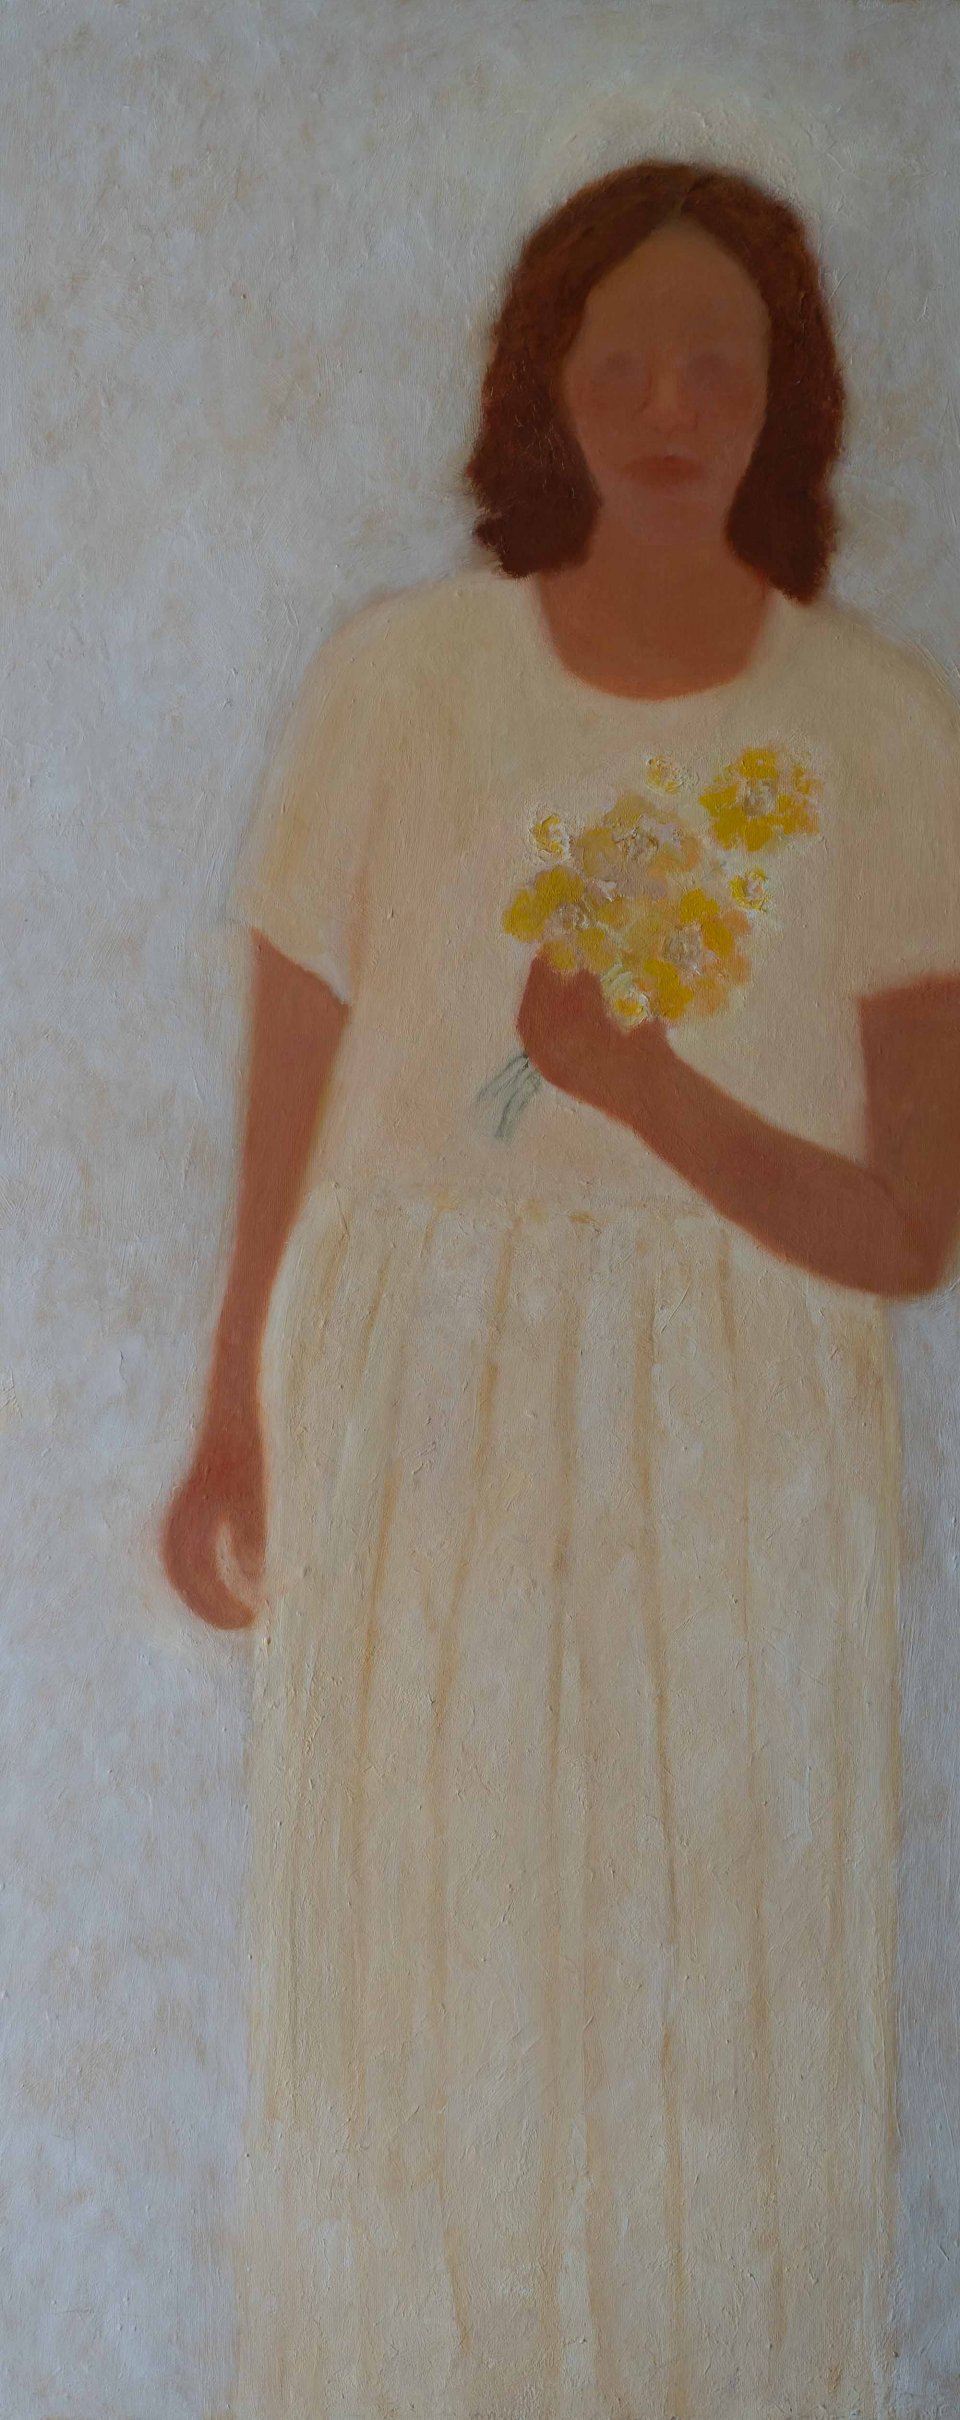 אישה ופרחים צהובים